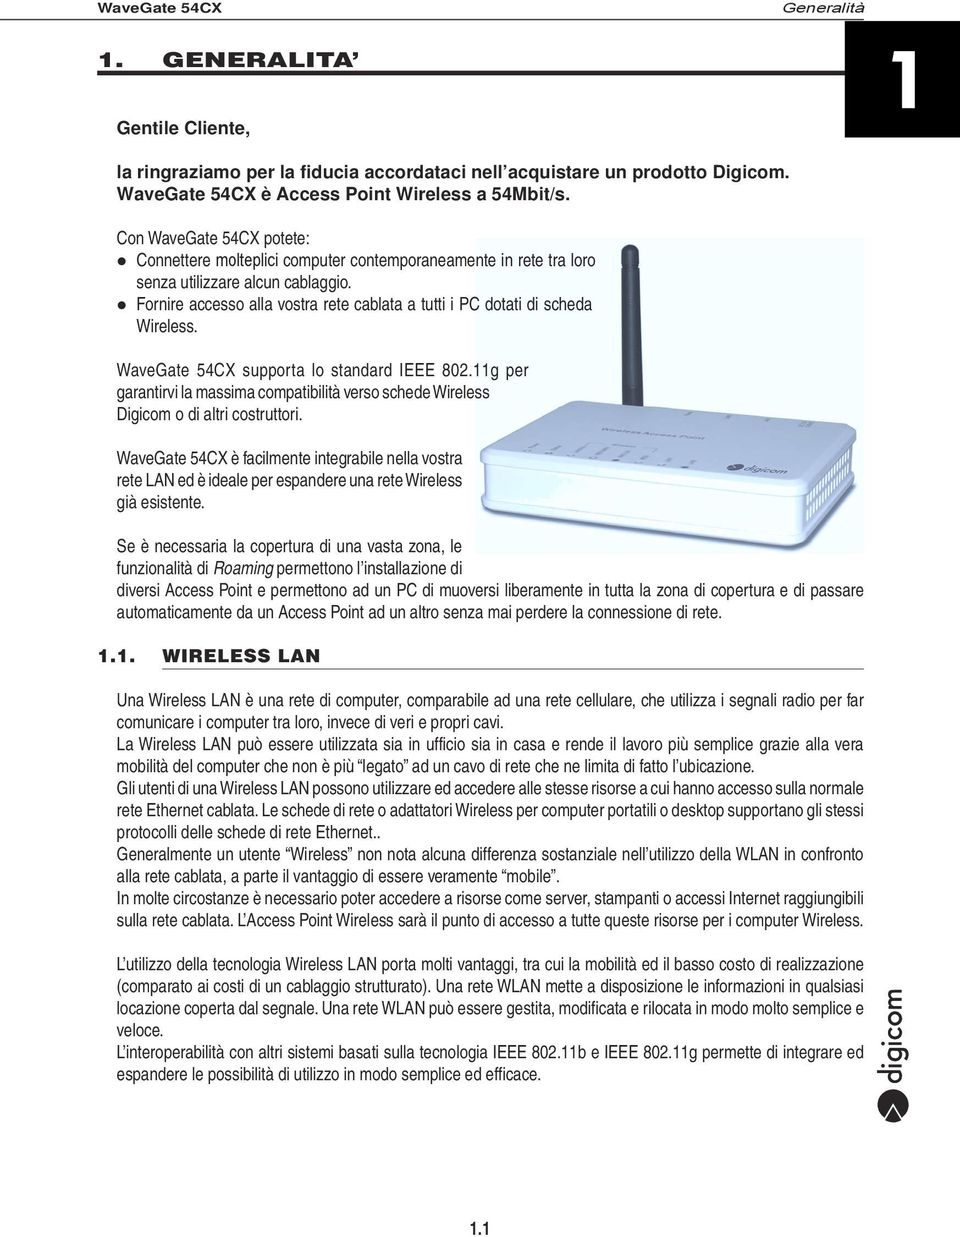 Fornire accesso alla vostra rete cablata a tutti i PC dotati di scheda Wireless. WaveGate 54CX supporta lo standard IEEE 802.